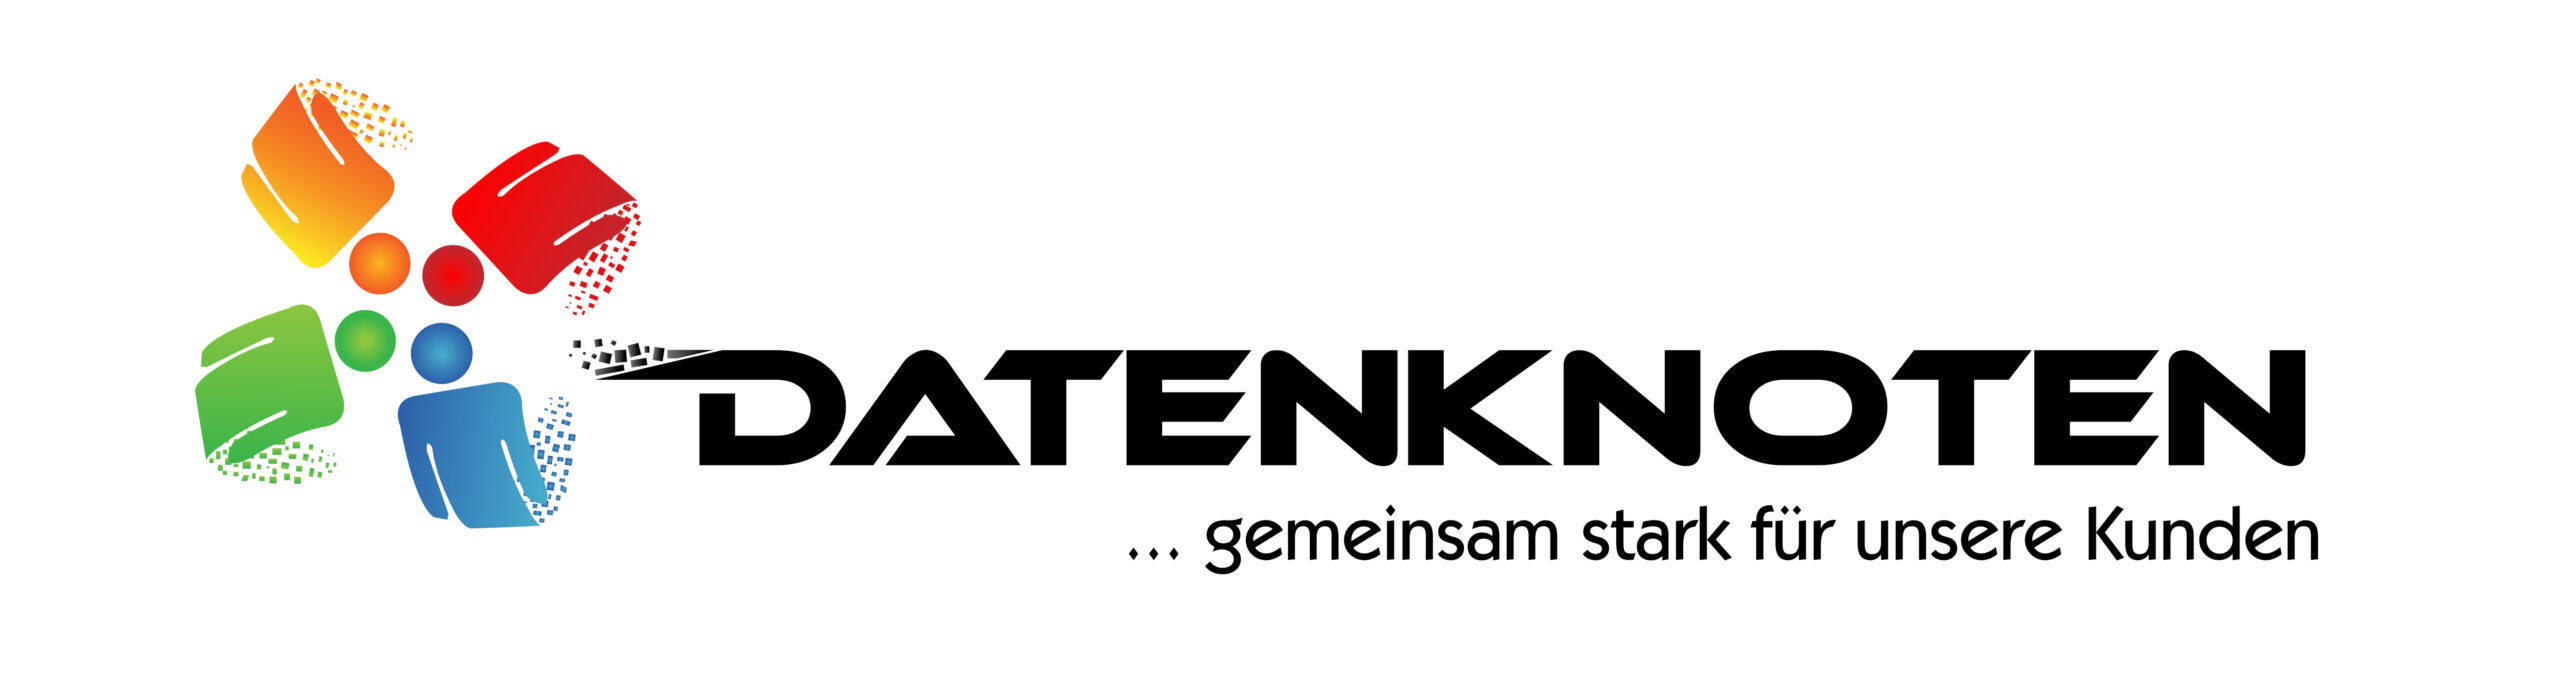 logo_datenknoten